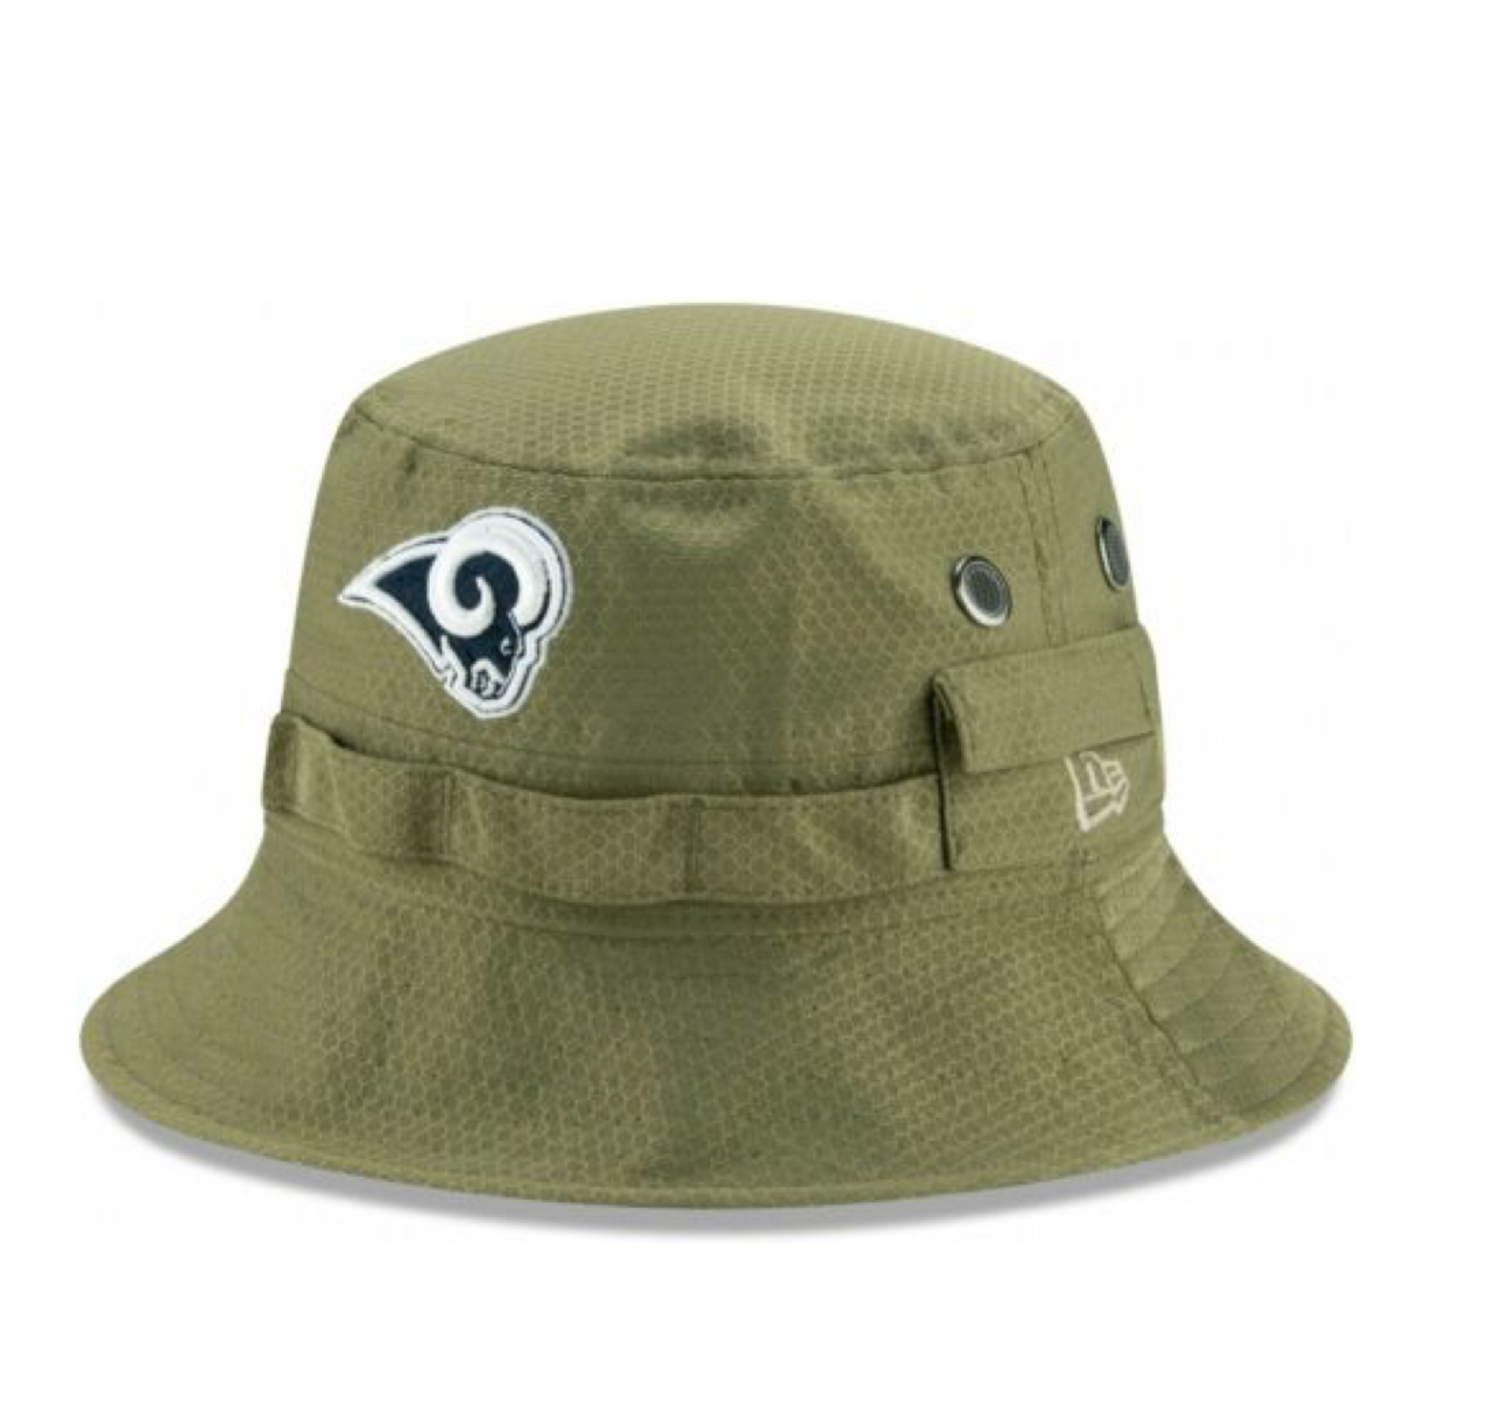 The Rams NFL Bucket Hat